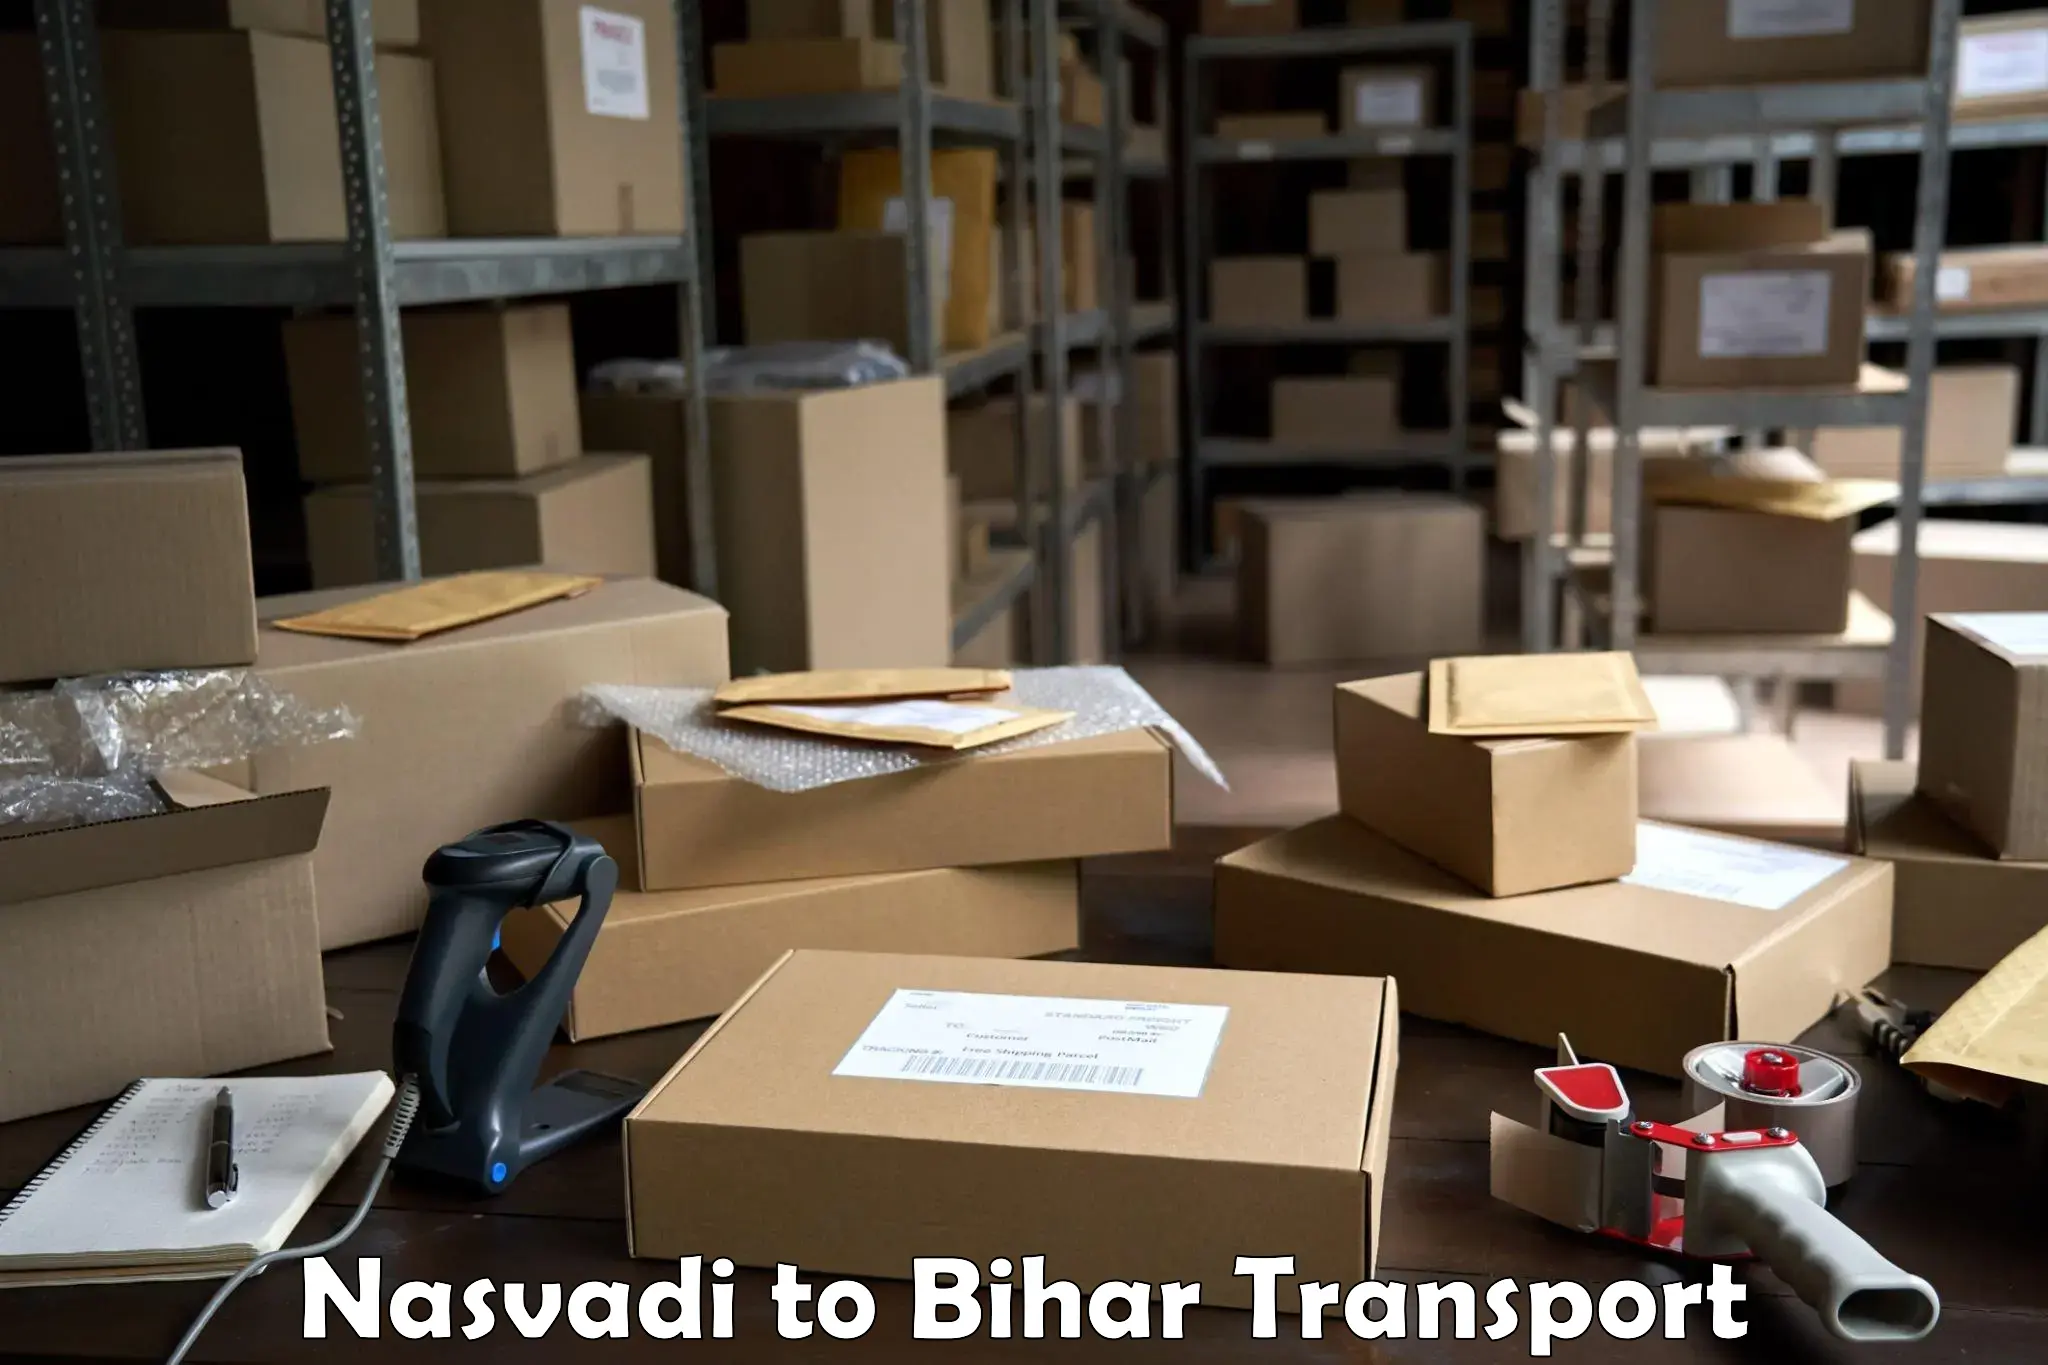 Commercial transport service Nasvadi to Rajgir